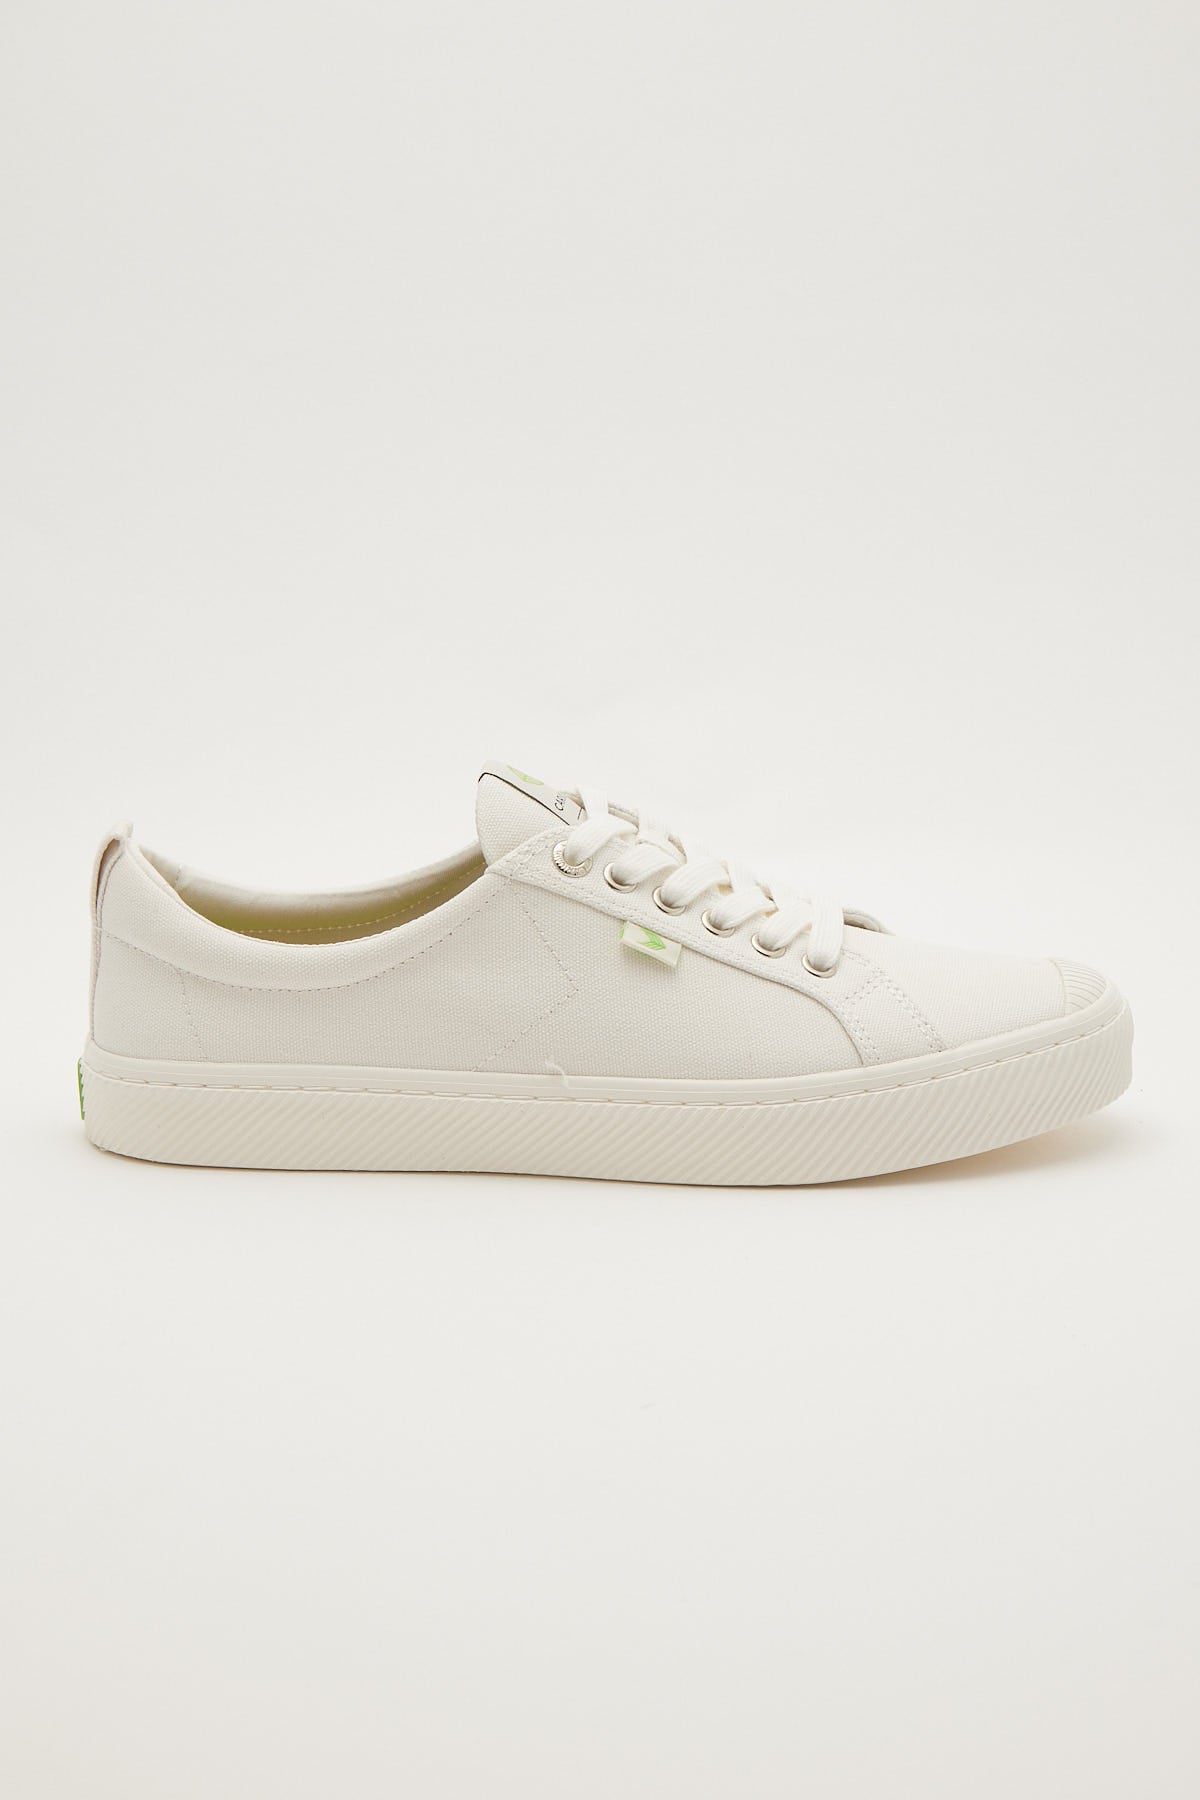 Cariuma Oca Low Canvas Sneaker Off-White – Universal Store